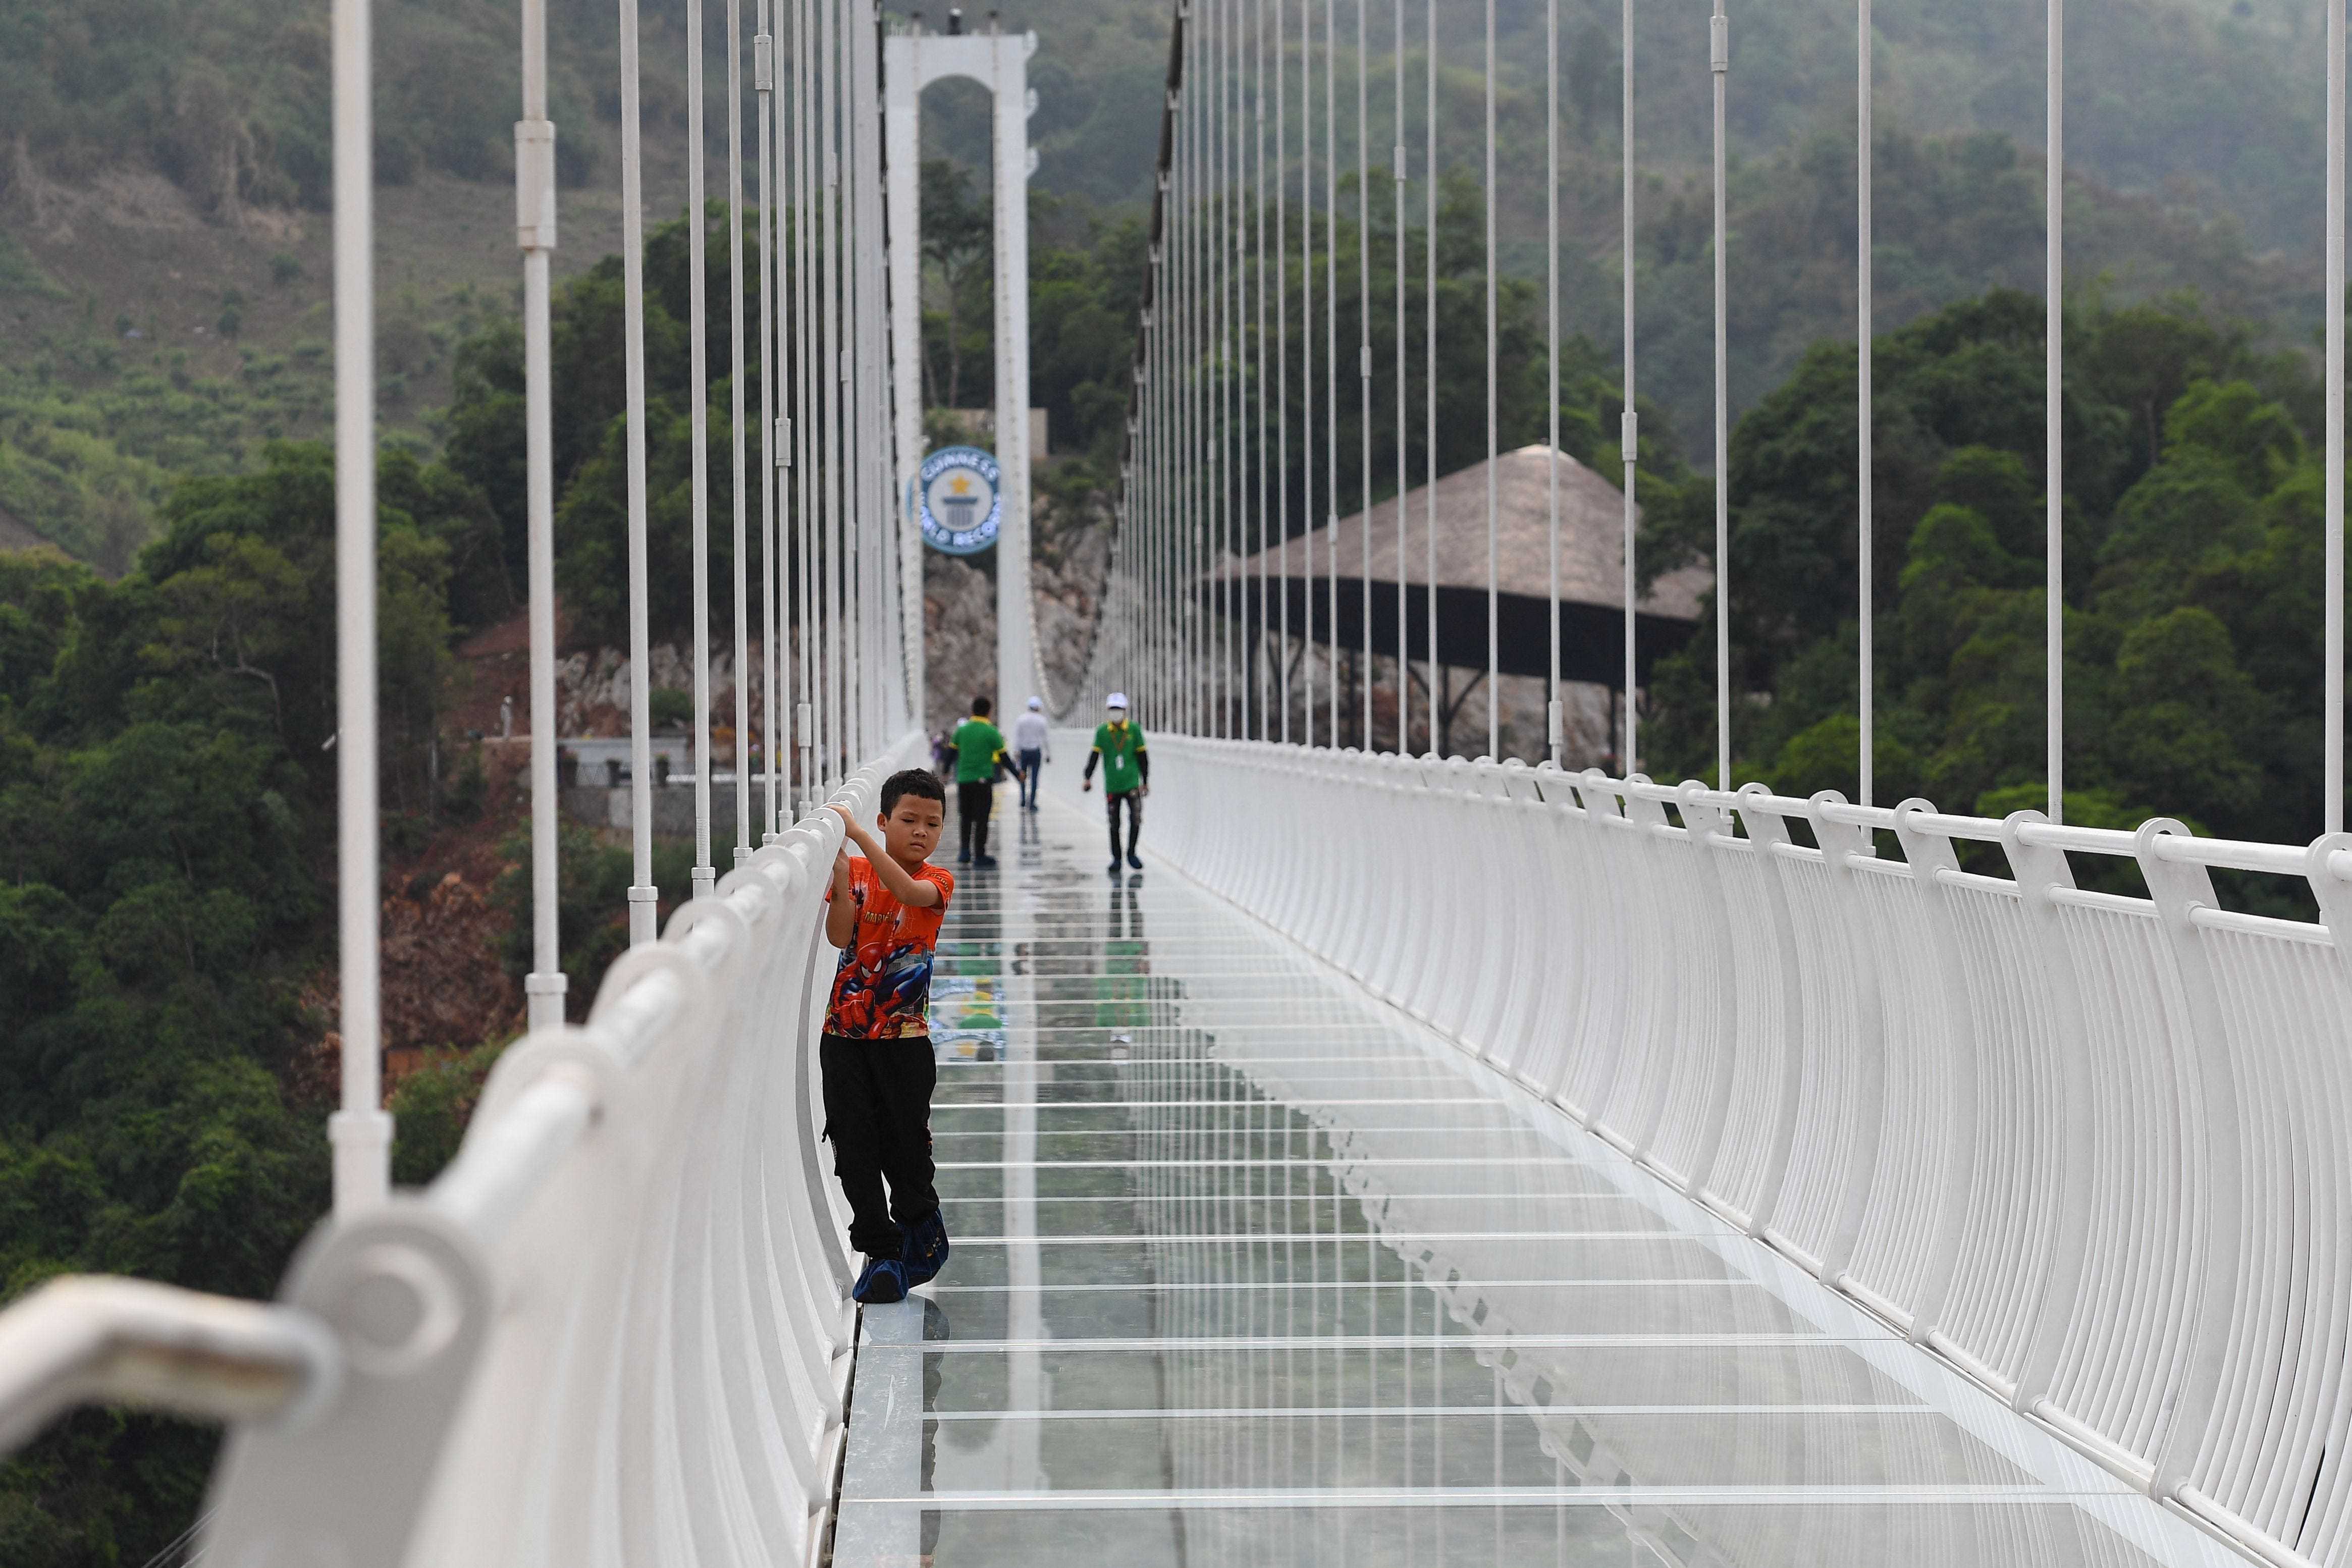 Ein Kind klammert sich an das Geländer der Glasbrücke Bach Long im Distrikt Moc Chau in der vietnamesischen Provinz Son La